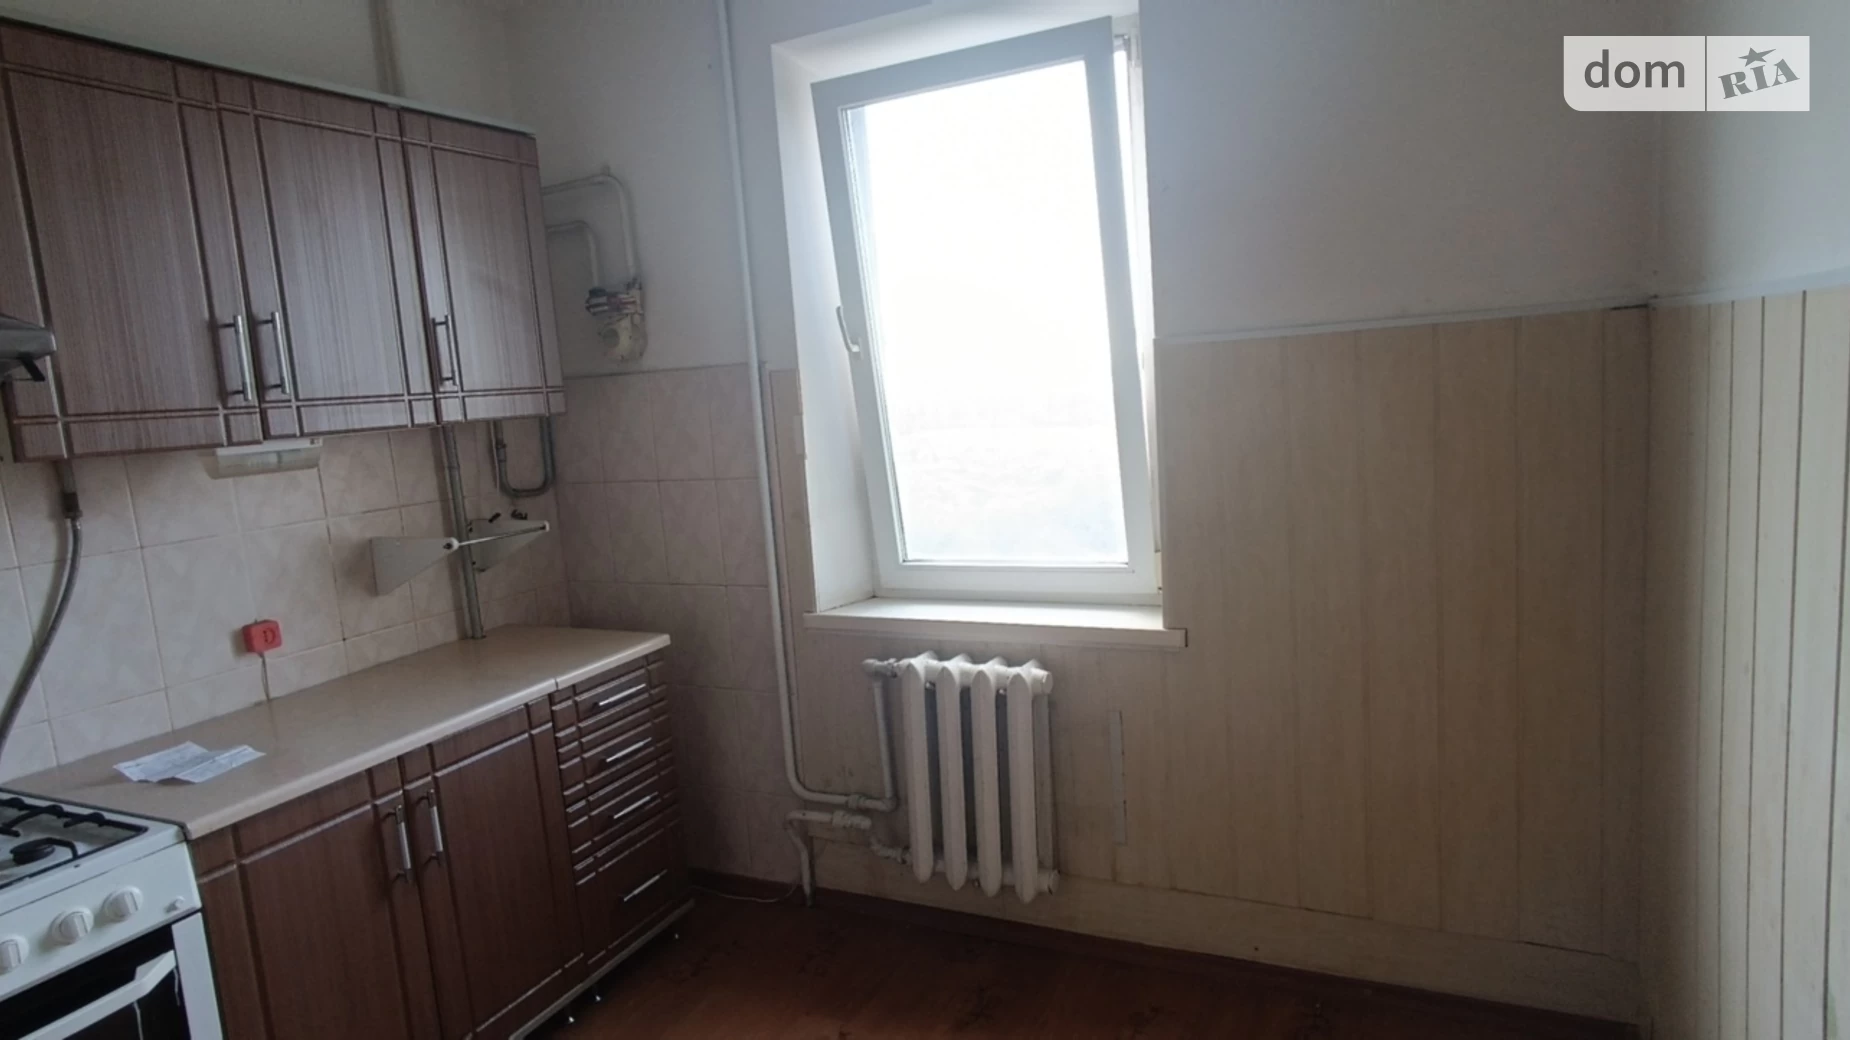 Продається 2-кімнатна квартира 52.5 кв. м у Миколаєві, ул. Рибна